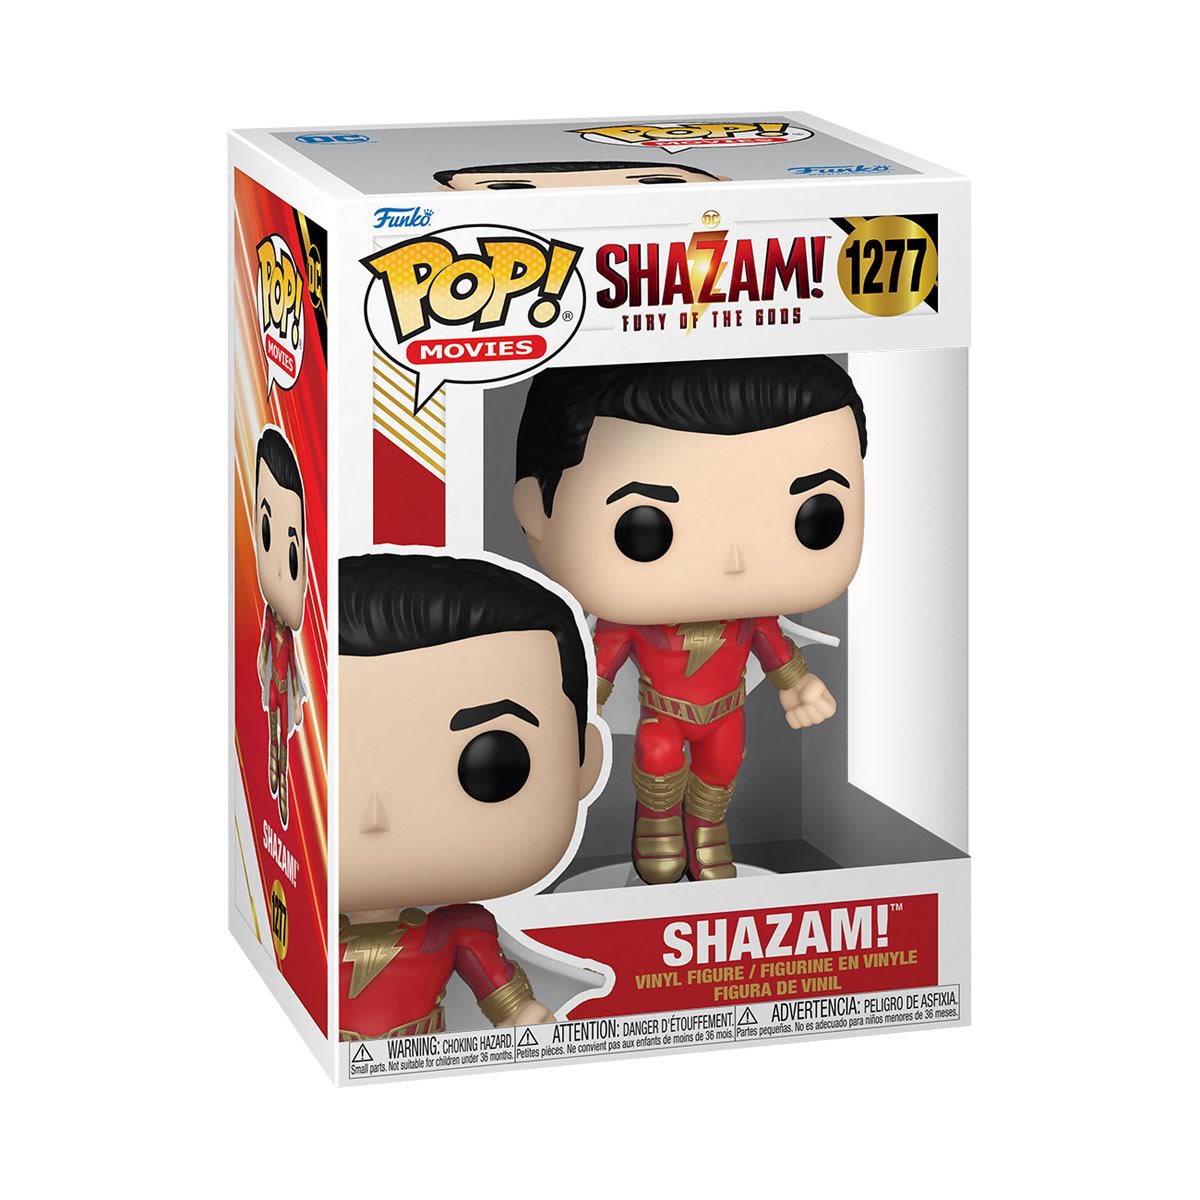 Shazam! Fury of the Gods Shazam Pop! Vinyl Figure with chance of chase!